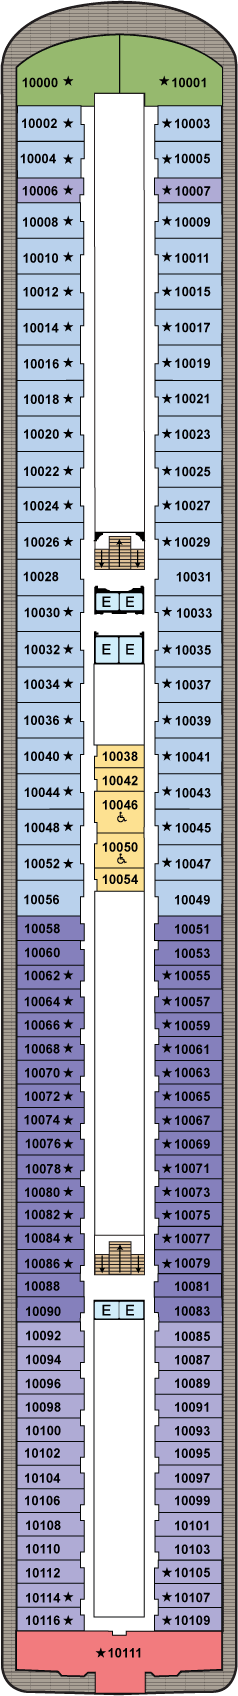 Deck 10 Deck Plan